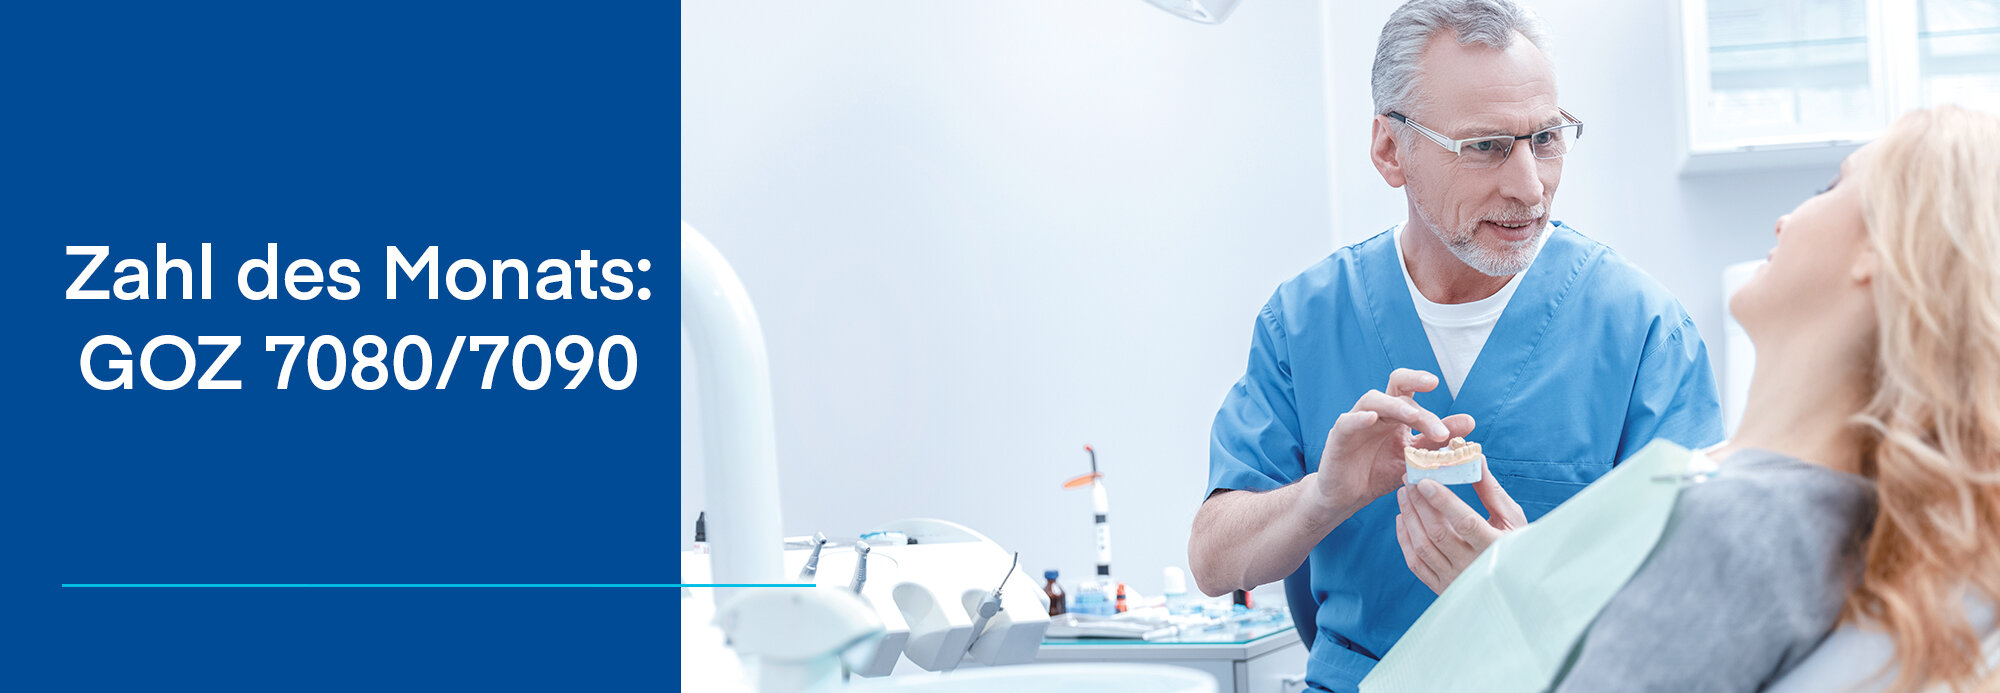 Zweigeteiltes Bild: Links blauer Hintergrund und weiße Schrift "Zahl des Monats: GOZ 7080/7090, rechts Zahnarzt der einer Patienten etwas an einem Gebissmodell erklärt.